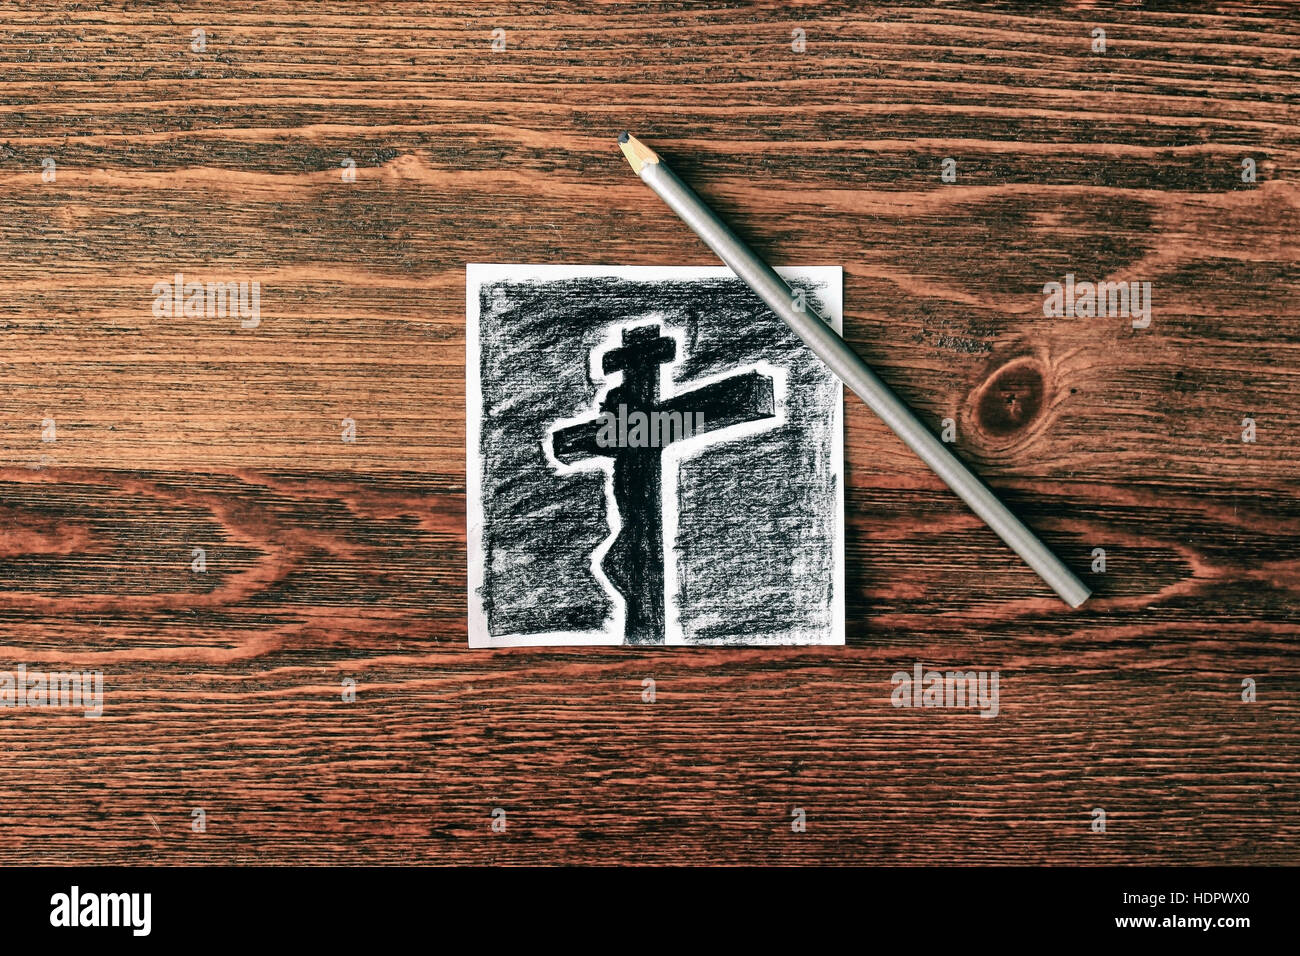 Eine moderne Holzkohle Skizze der Kreuzigung von Jesus Christus fotografiert Stockfoto